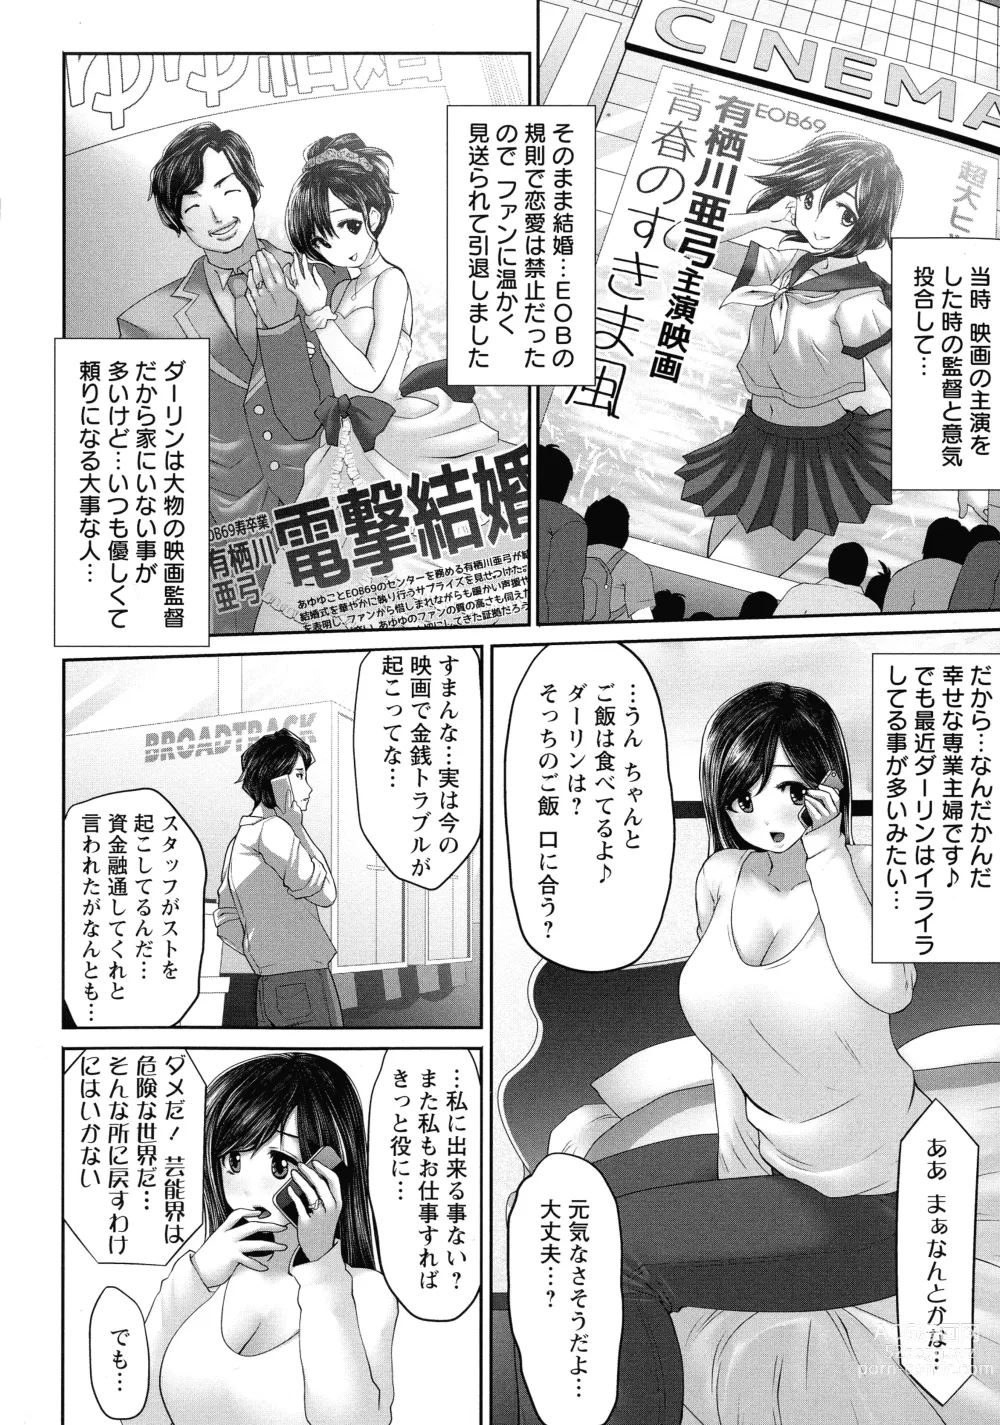 Page 10 of manga Idol Cum!